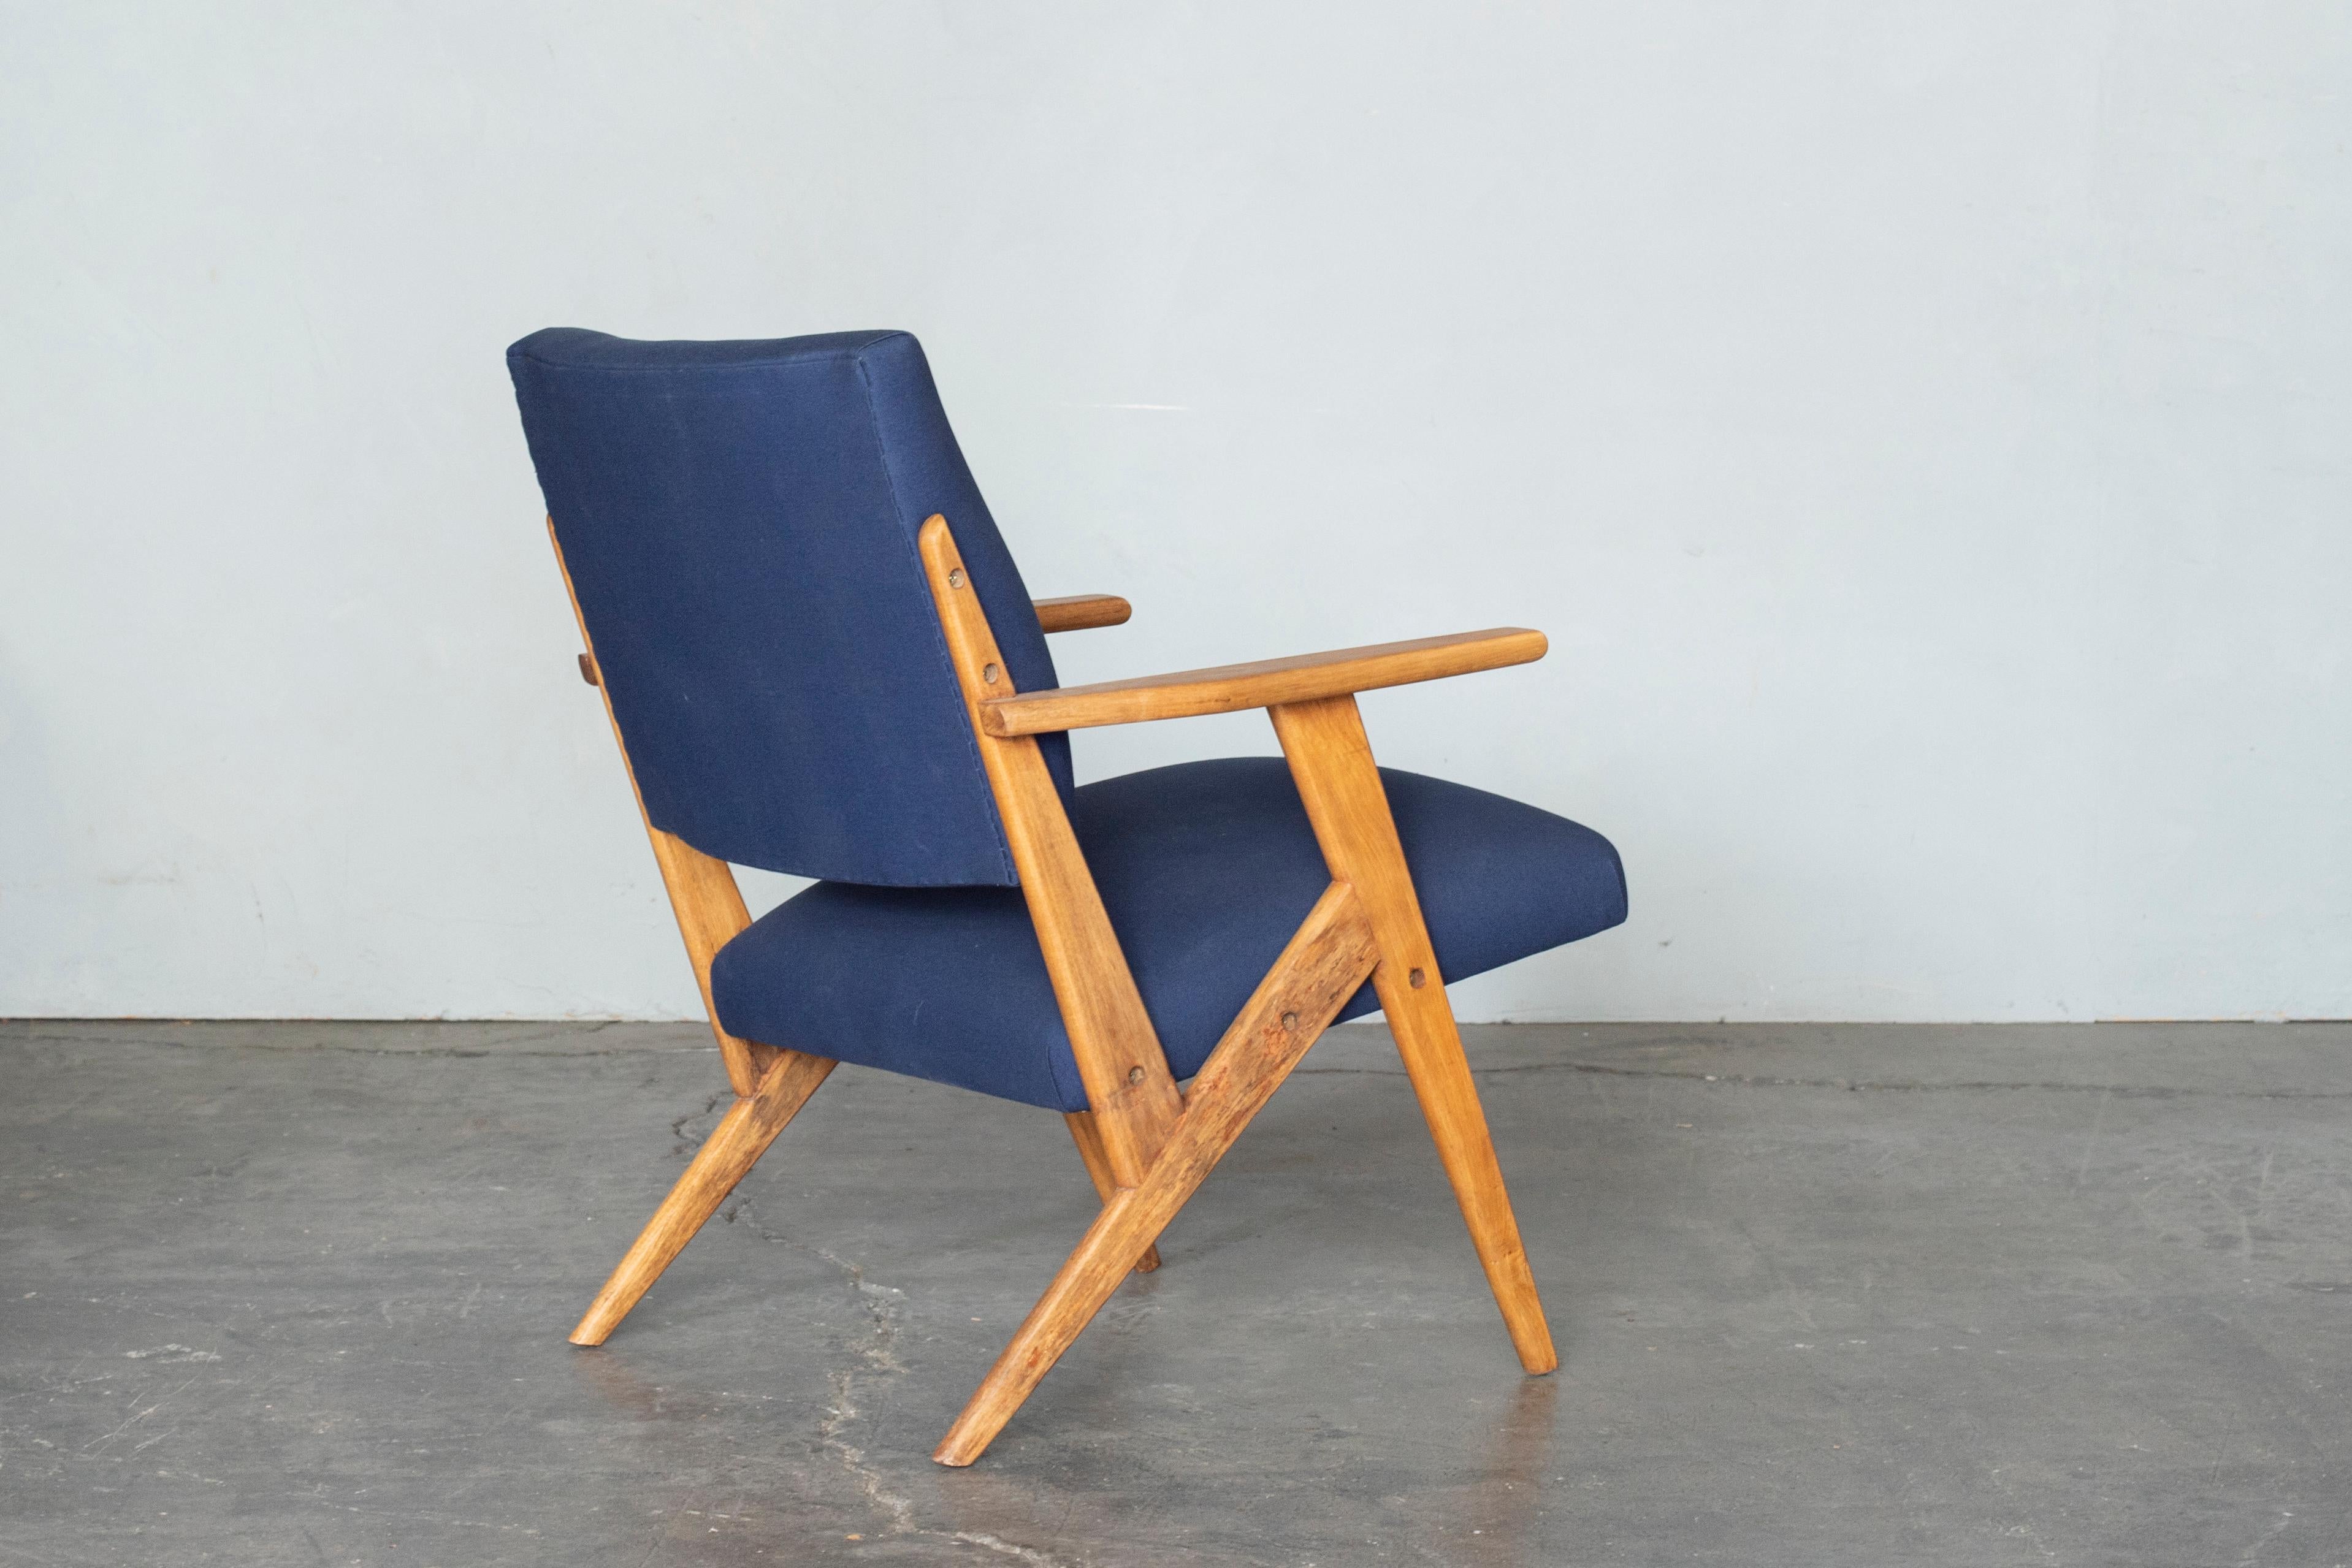 Ensemble de fauteuils conçus par Jose Zanine Caldas pour son Studio 'Moveis Artisticos Z' en 1950.
Design brésilien du milieu du siècle.
Fabriqué en bois massif, retapissé avec du tissu bleu.
          